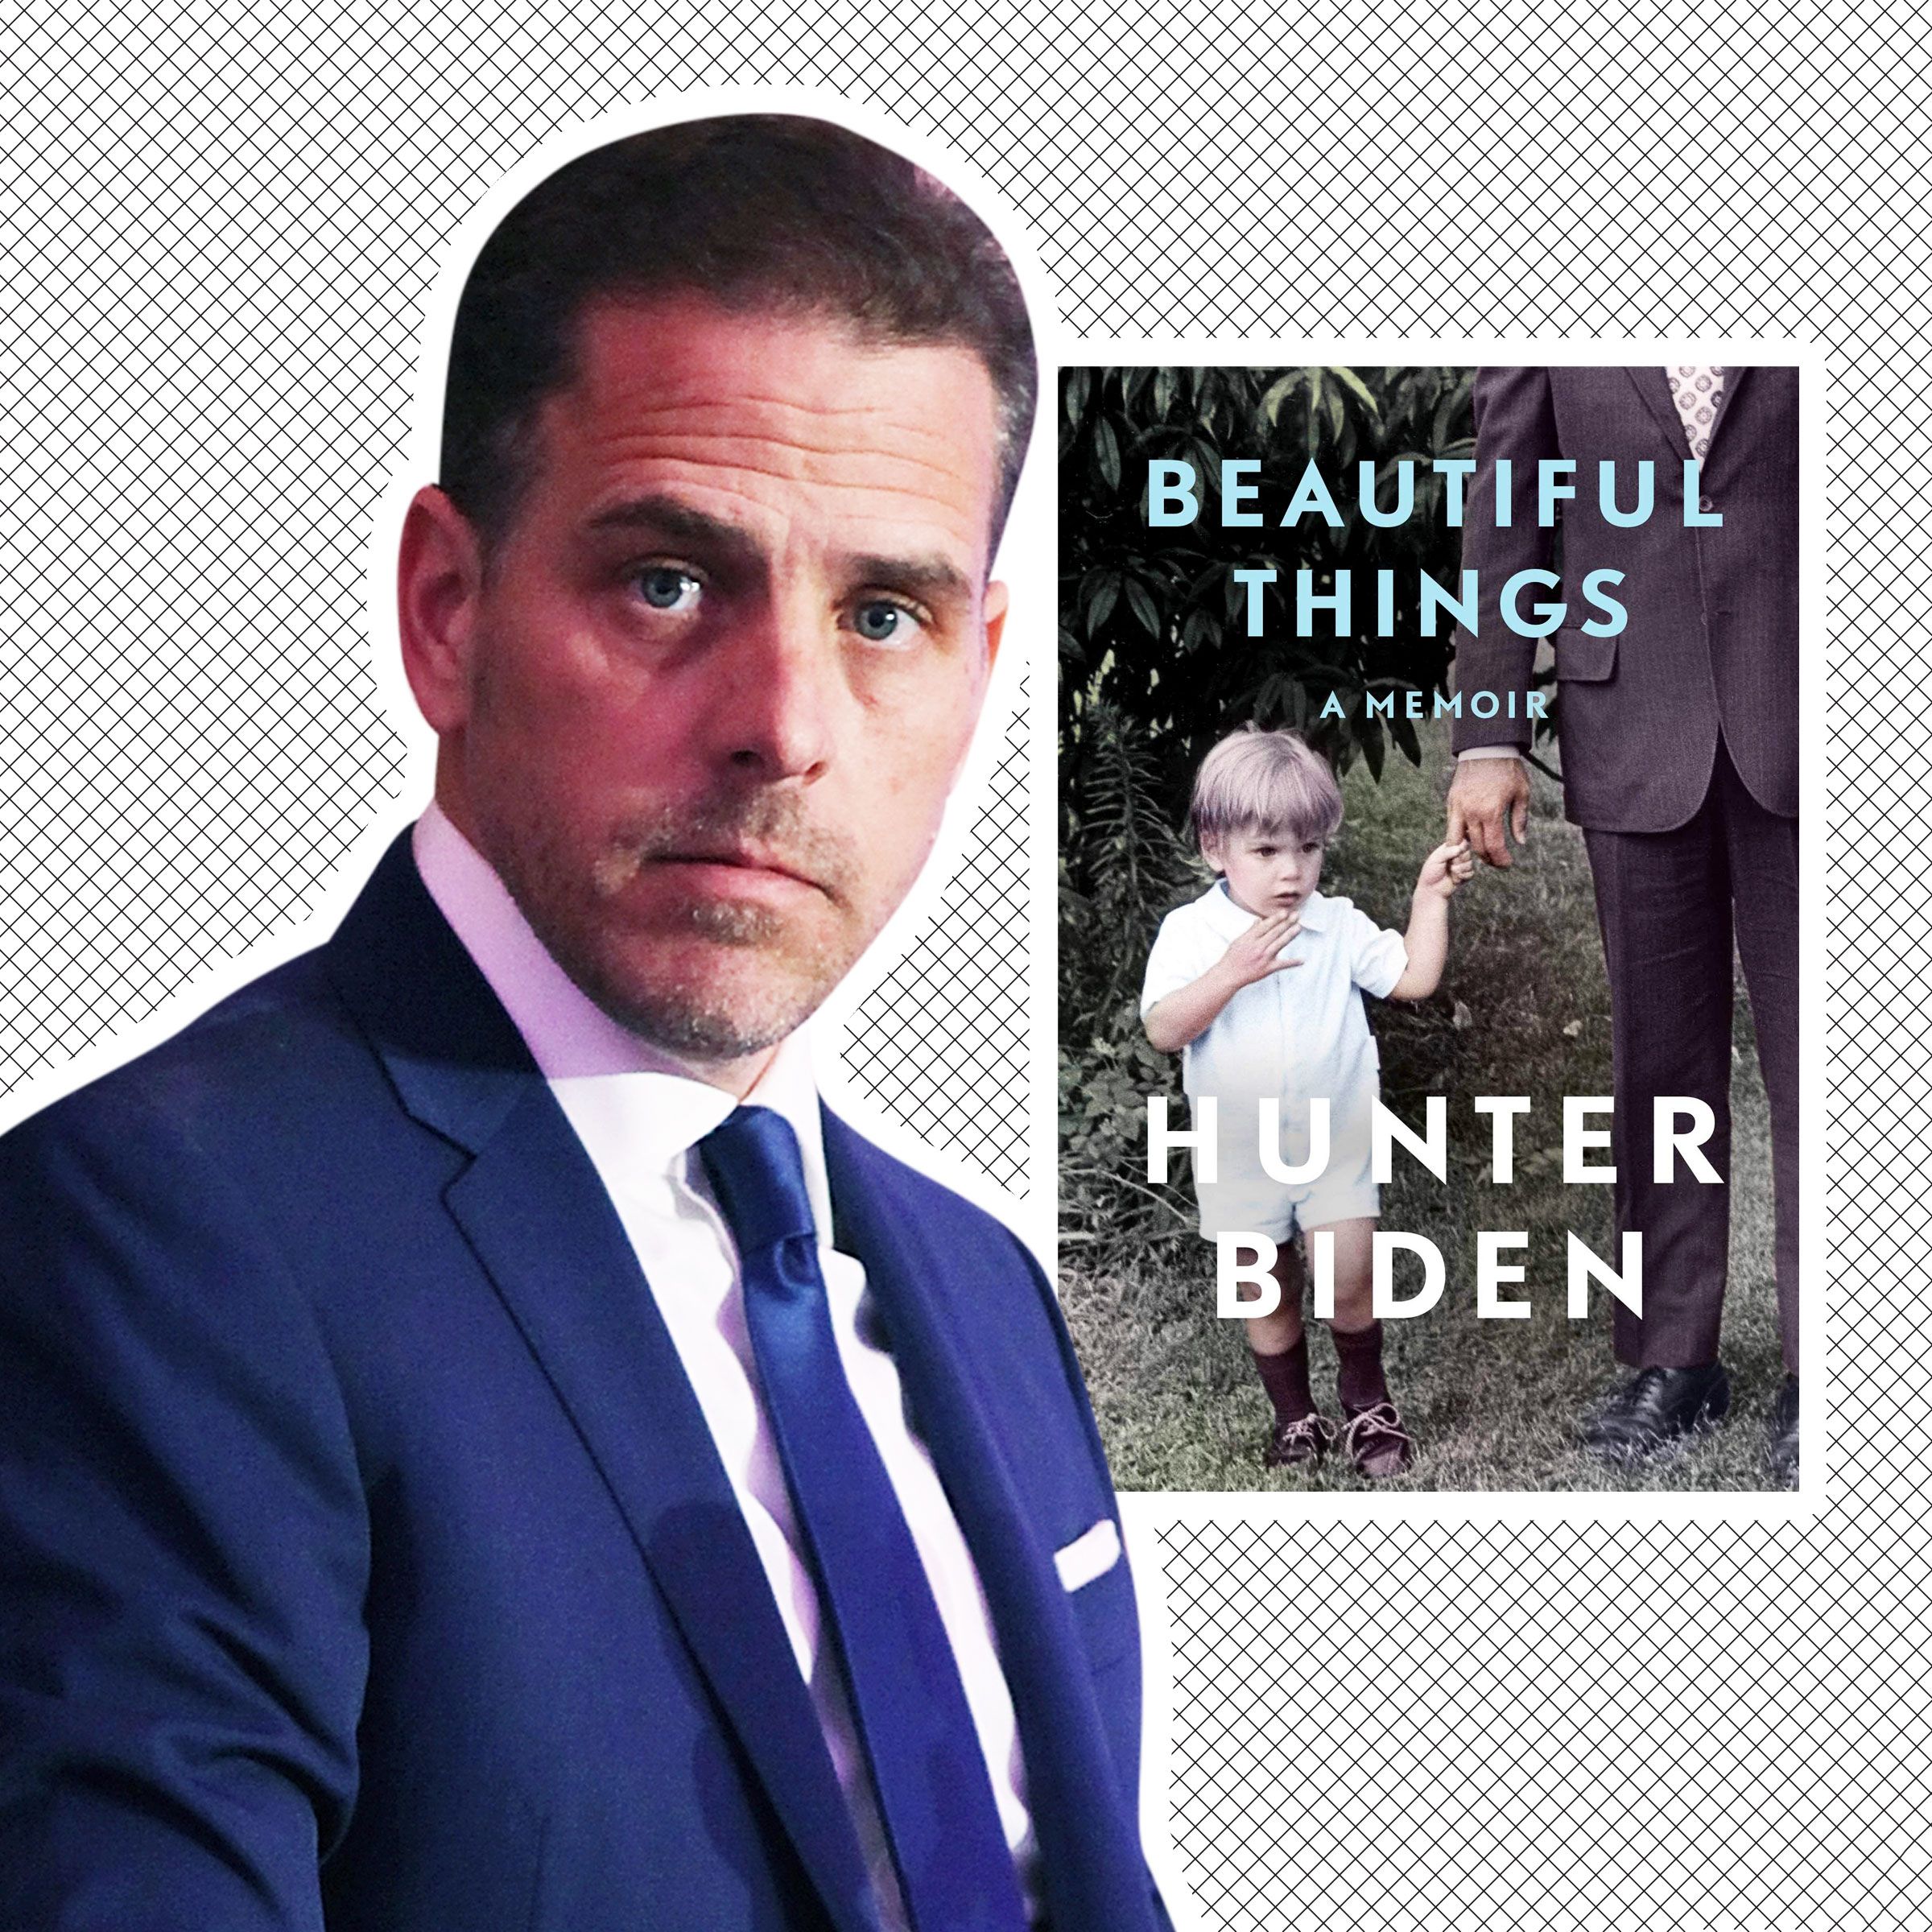 Hunter Biden 'Beautiful Things': Review